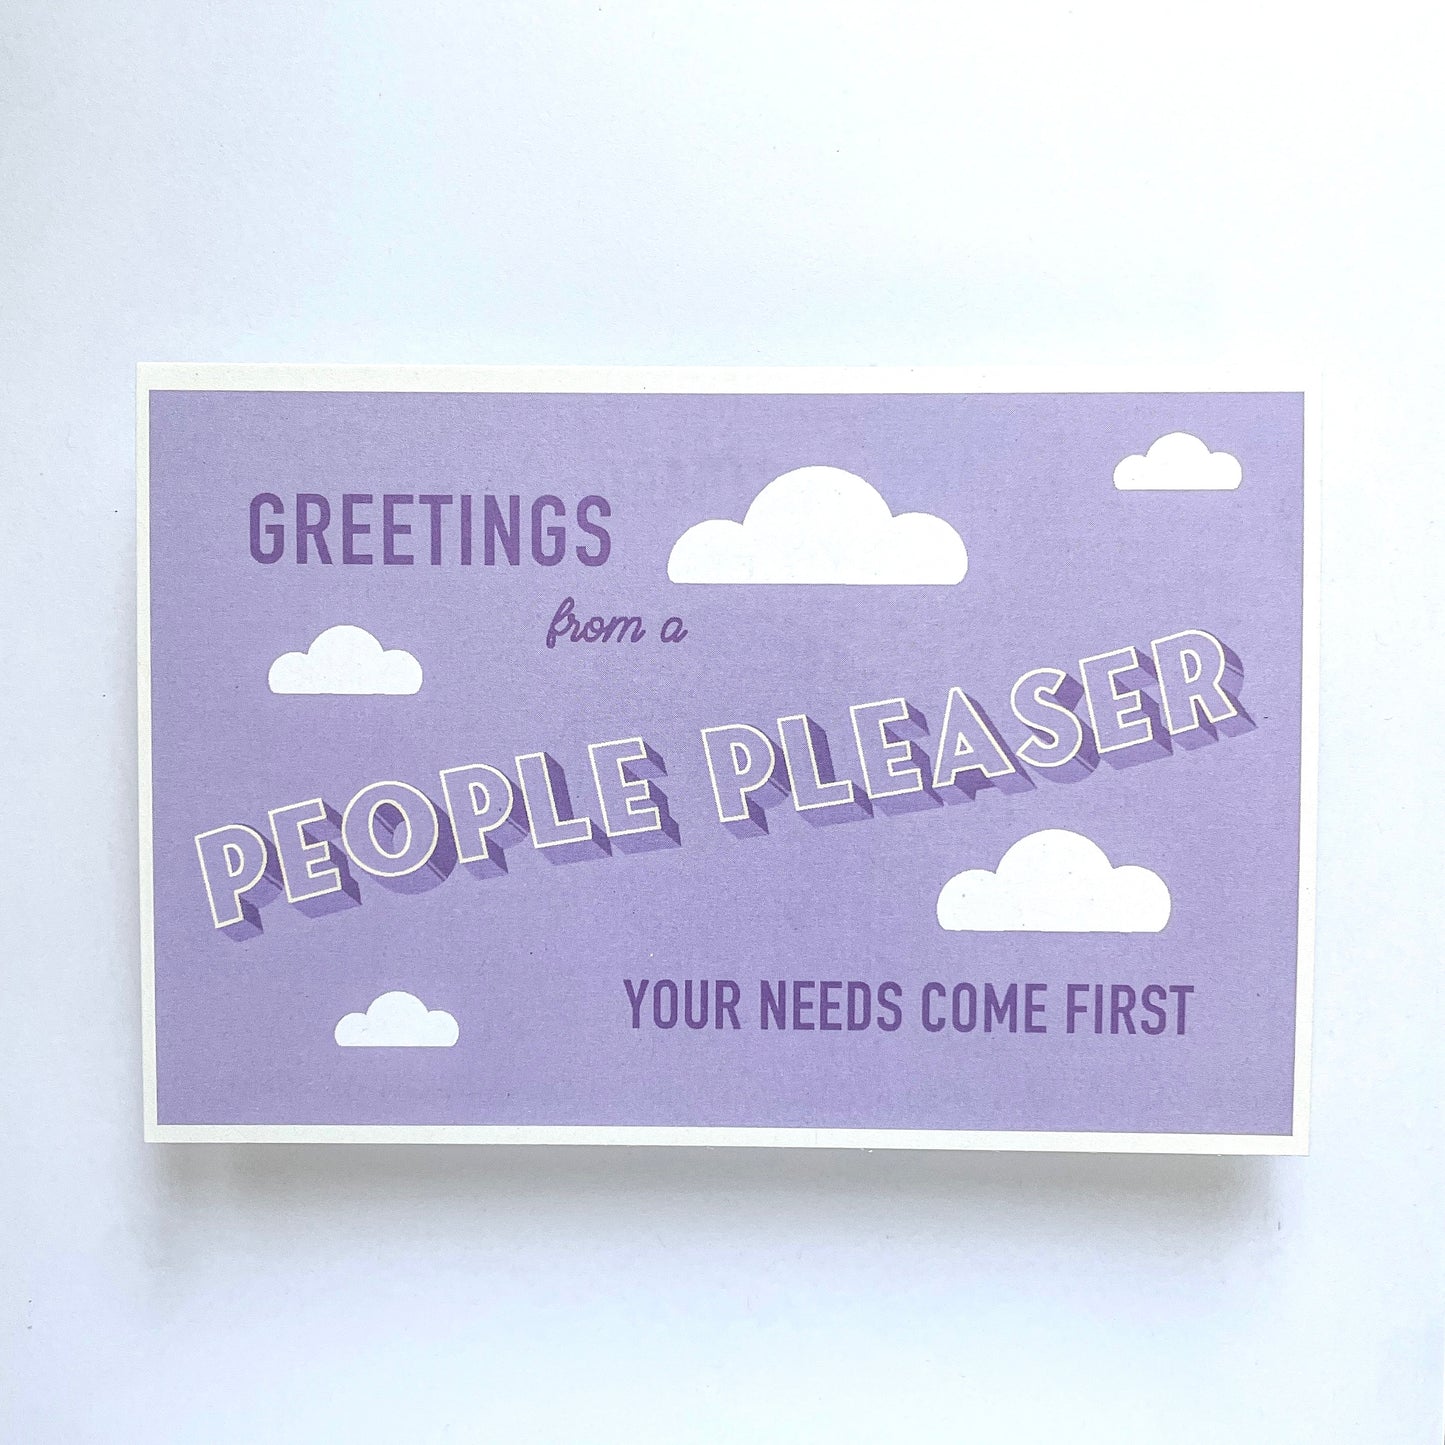 People Pleaser Postcard